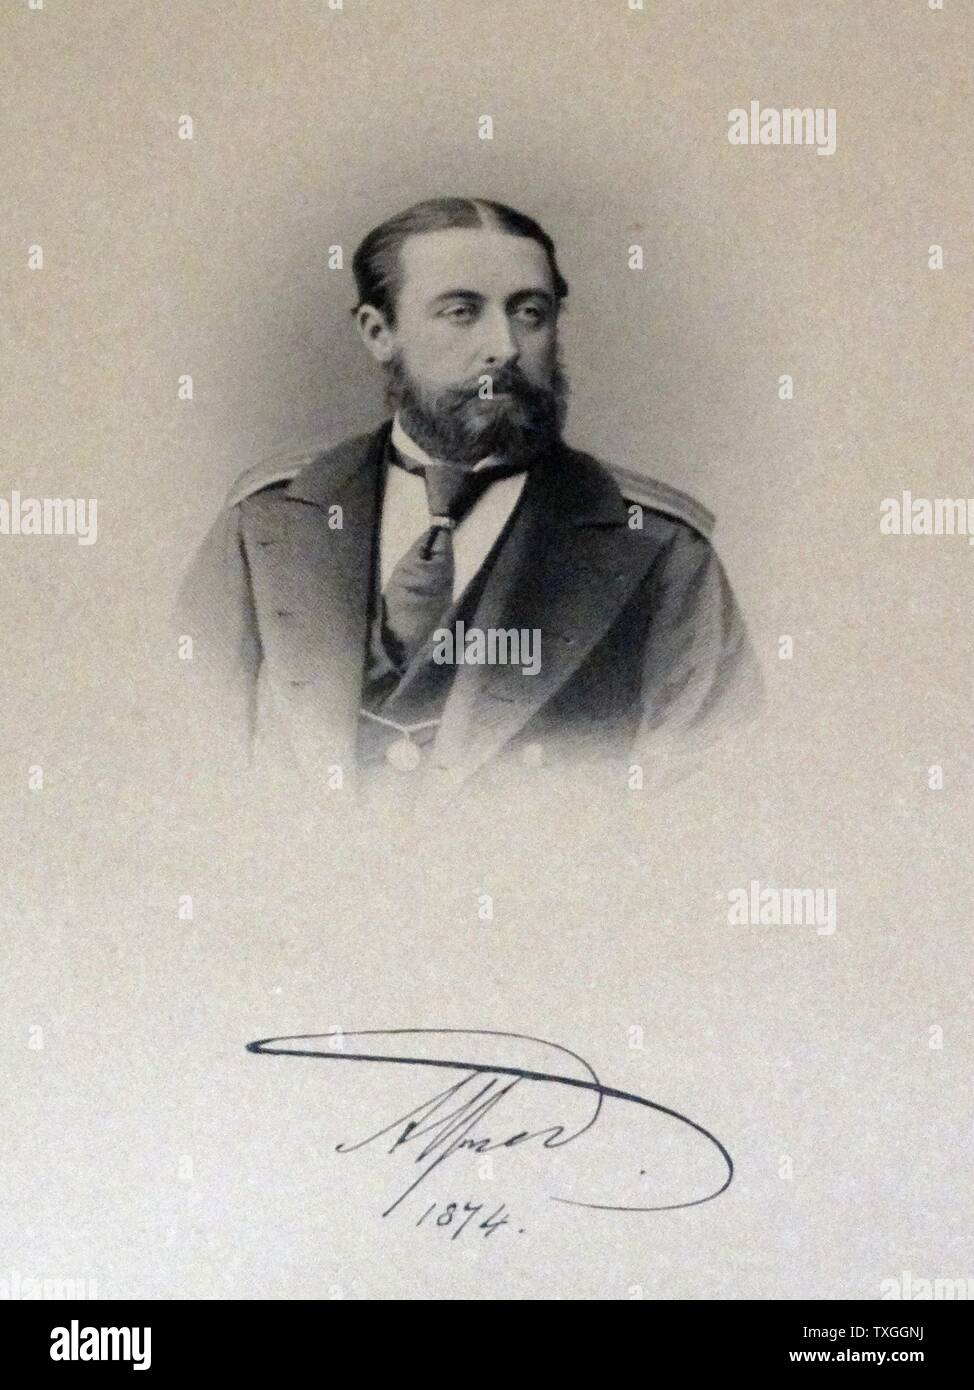 Édouard VII (Albert Edward 1841 Ñ1910) photographié en 1874 avec sa signature. Roi du Royaume-Uni et les Dominions britanniques et l'empereur de l'Inde à partir du 22 janvier 1901 jusqu'à sa mort. Banque D'Images